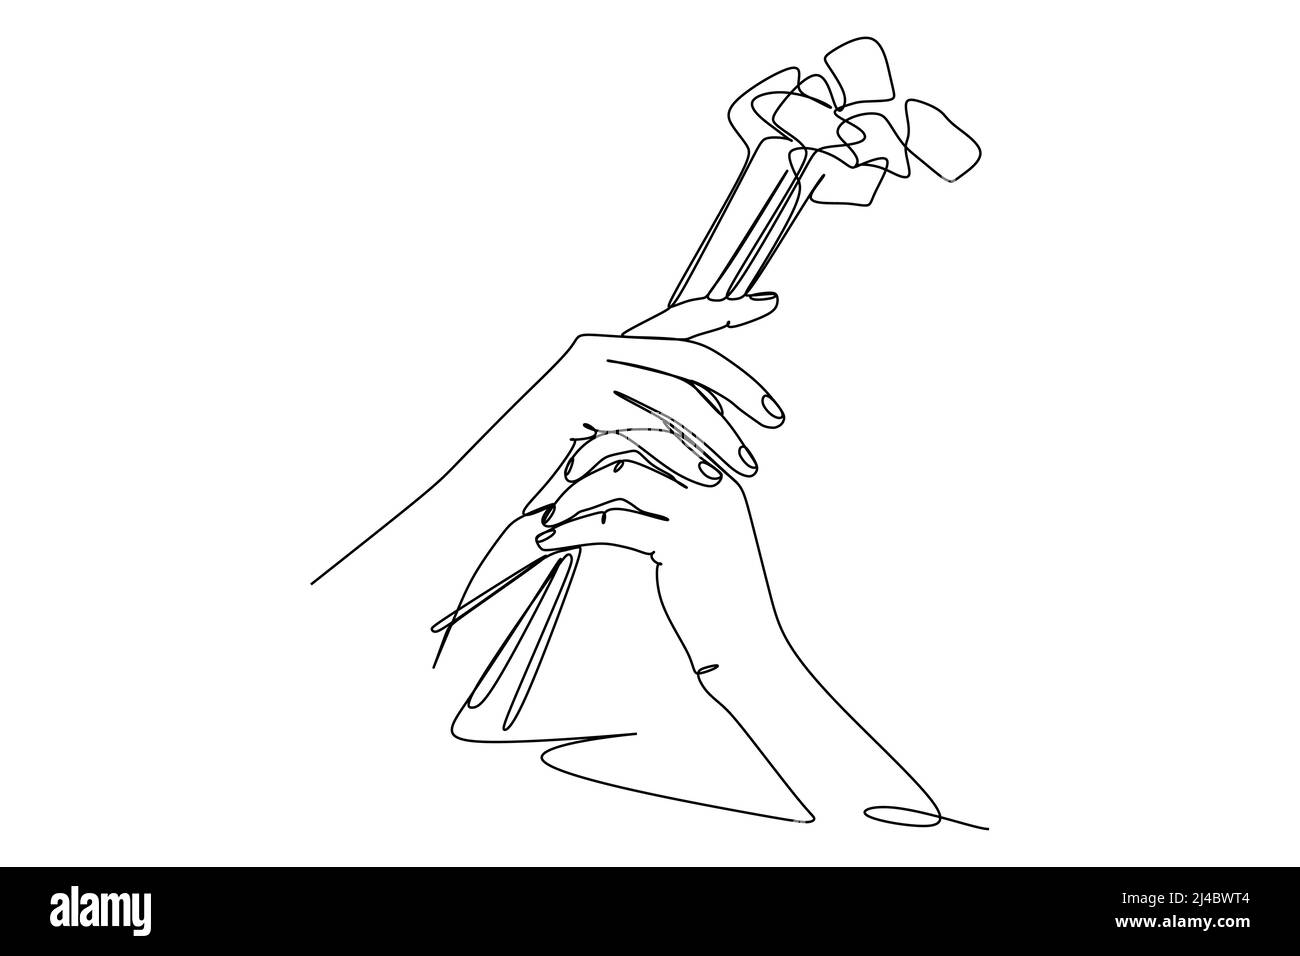 Einzelne kontinuierliche Linie hält Blumen isoliert auf weißem Hintergrund Vektor-Illustration Stock Vektor